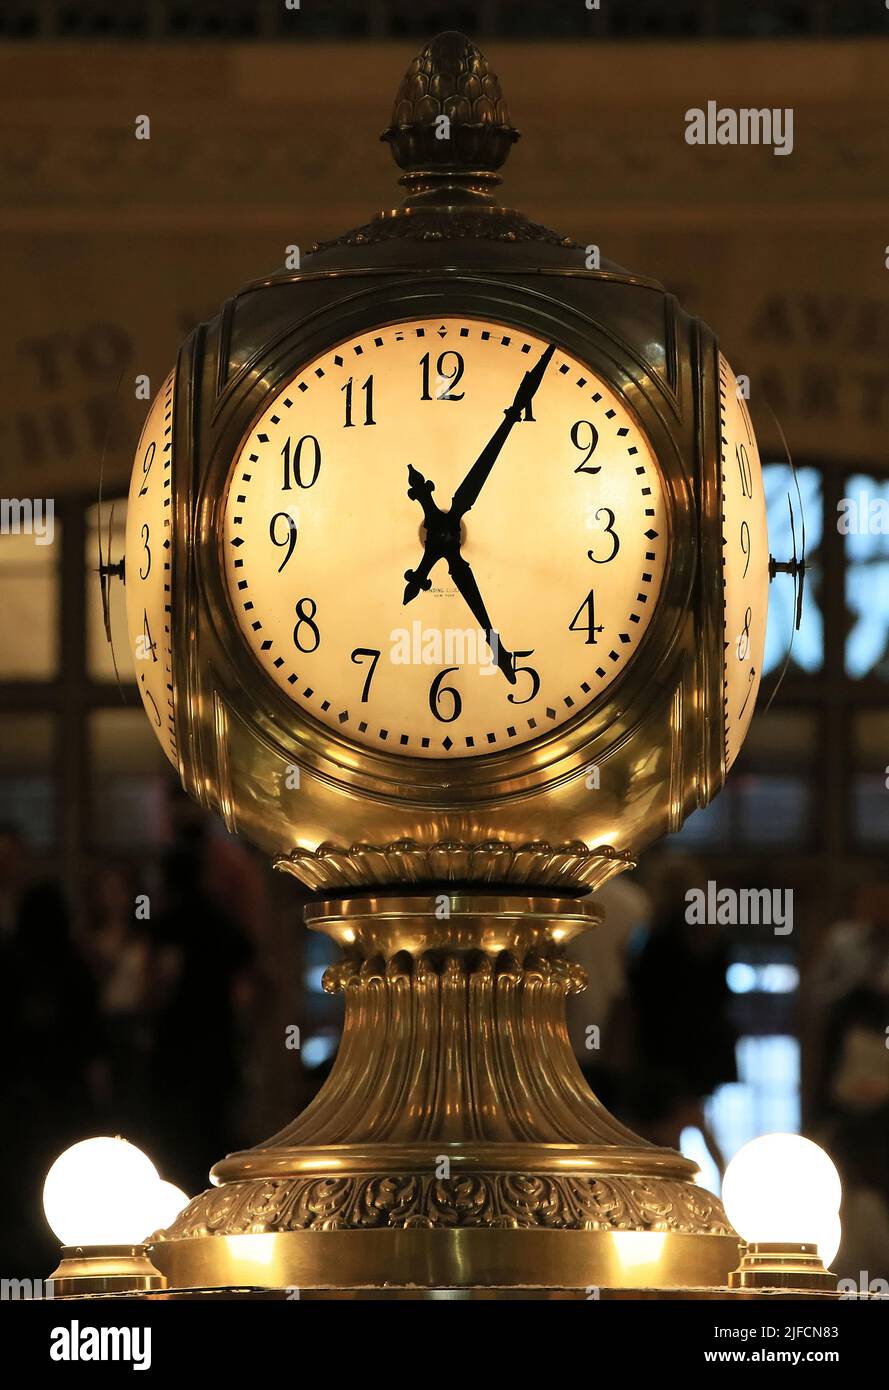 Nahaufnahme der berühmten Uhr in der Haupthalle des Grand Central Station Terminal, Manhattan, New York City, New York, USA. Stockfoto